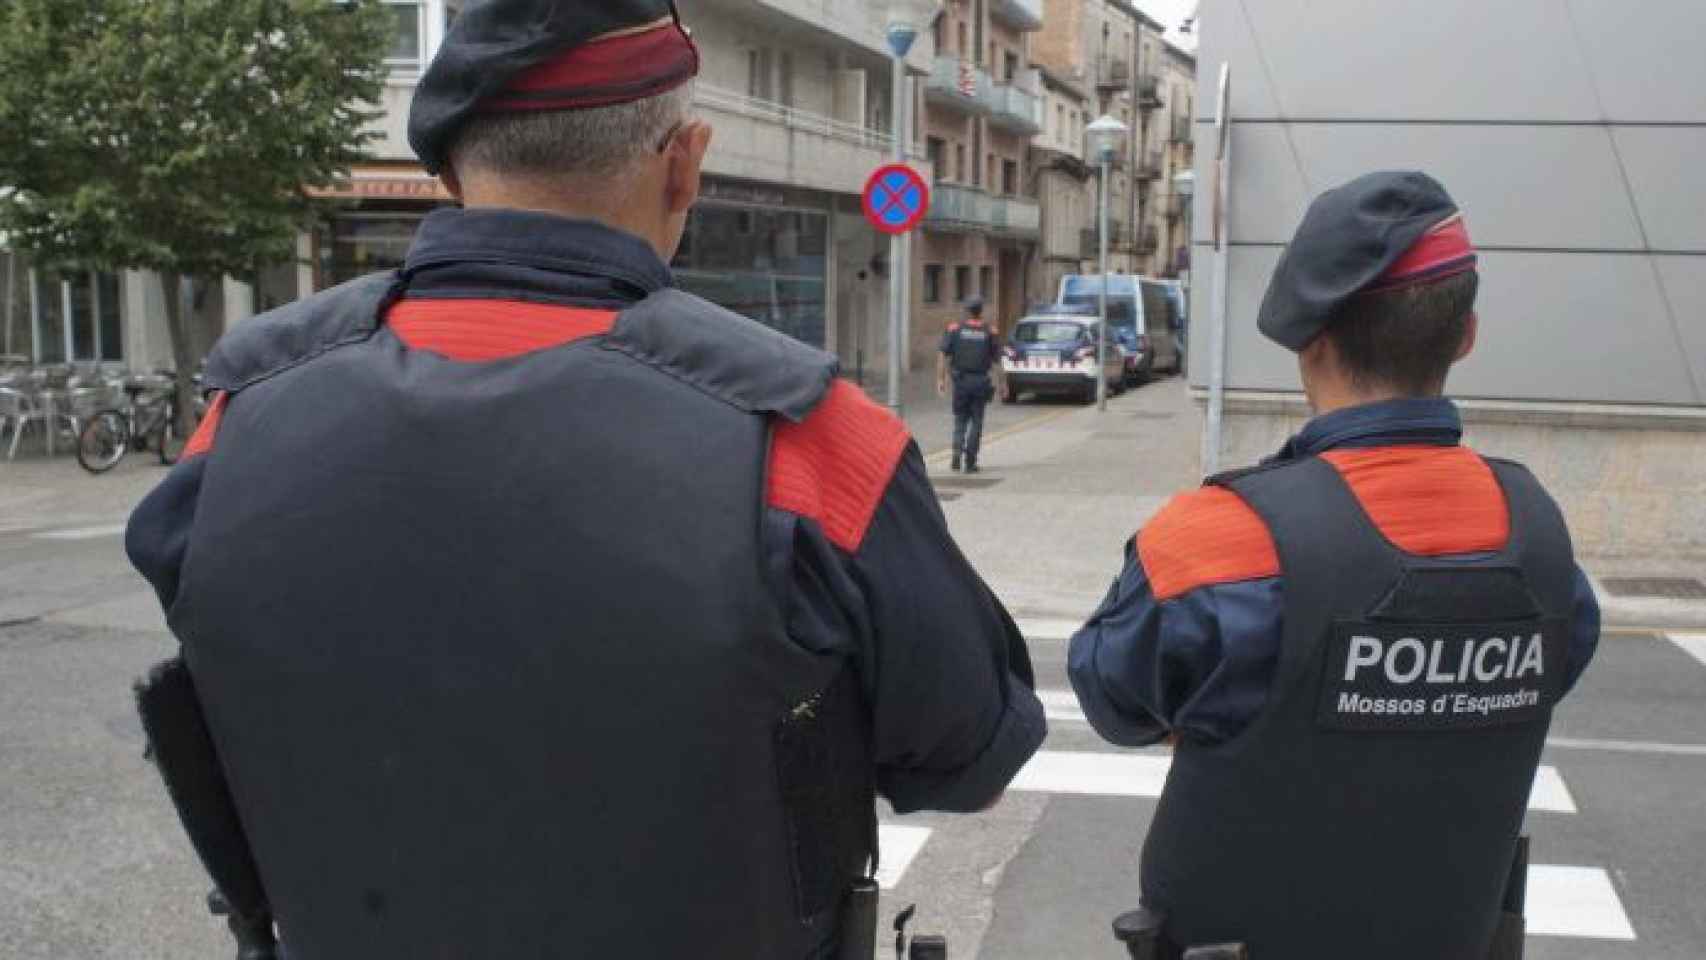 Agentes de Mossos d'Esquadra patrullando, en una imagen de archivo / EFE